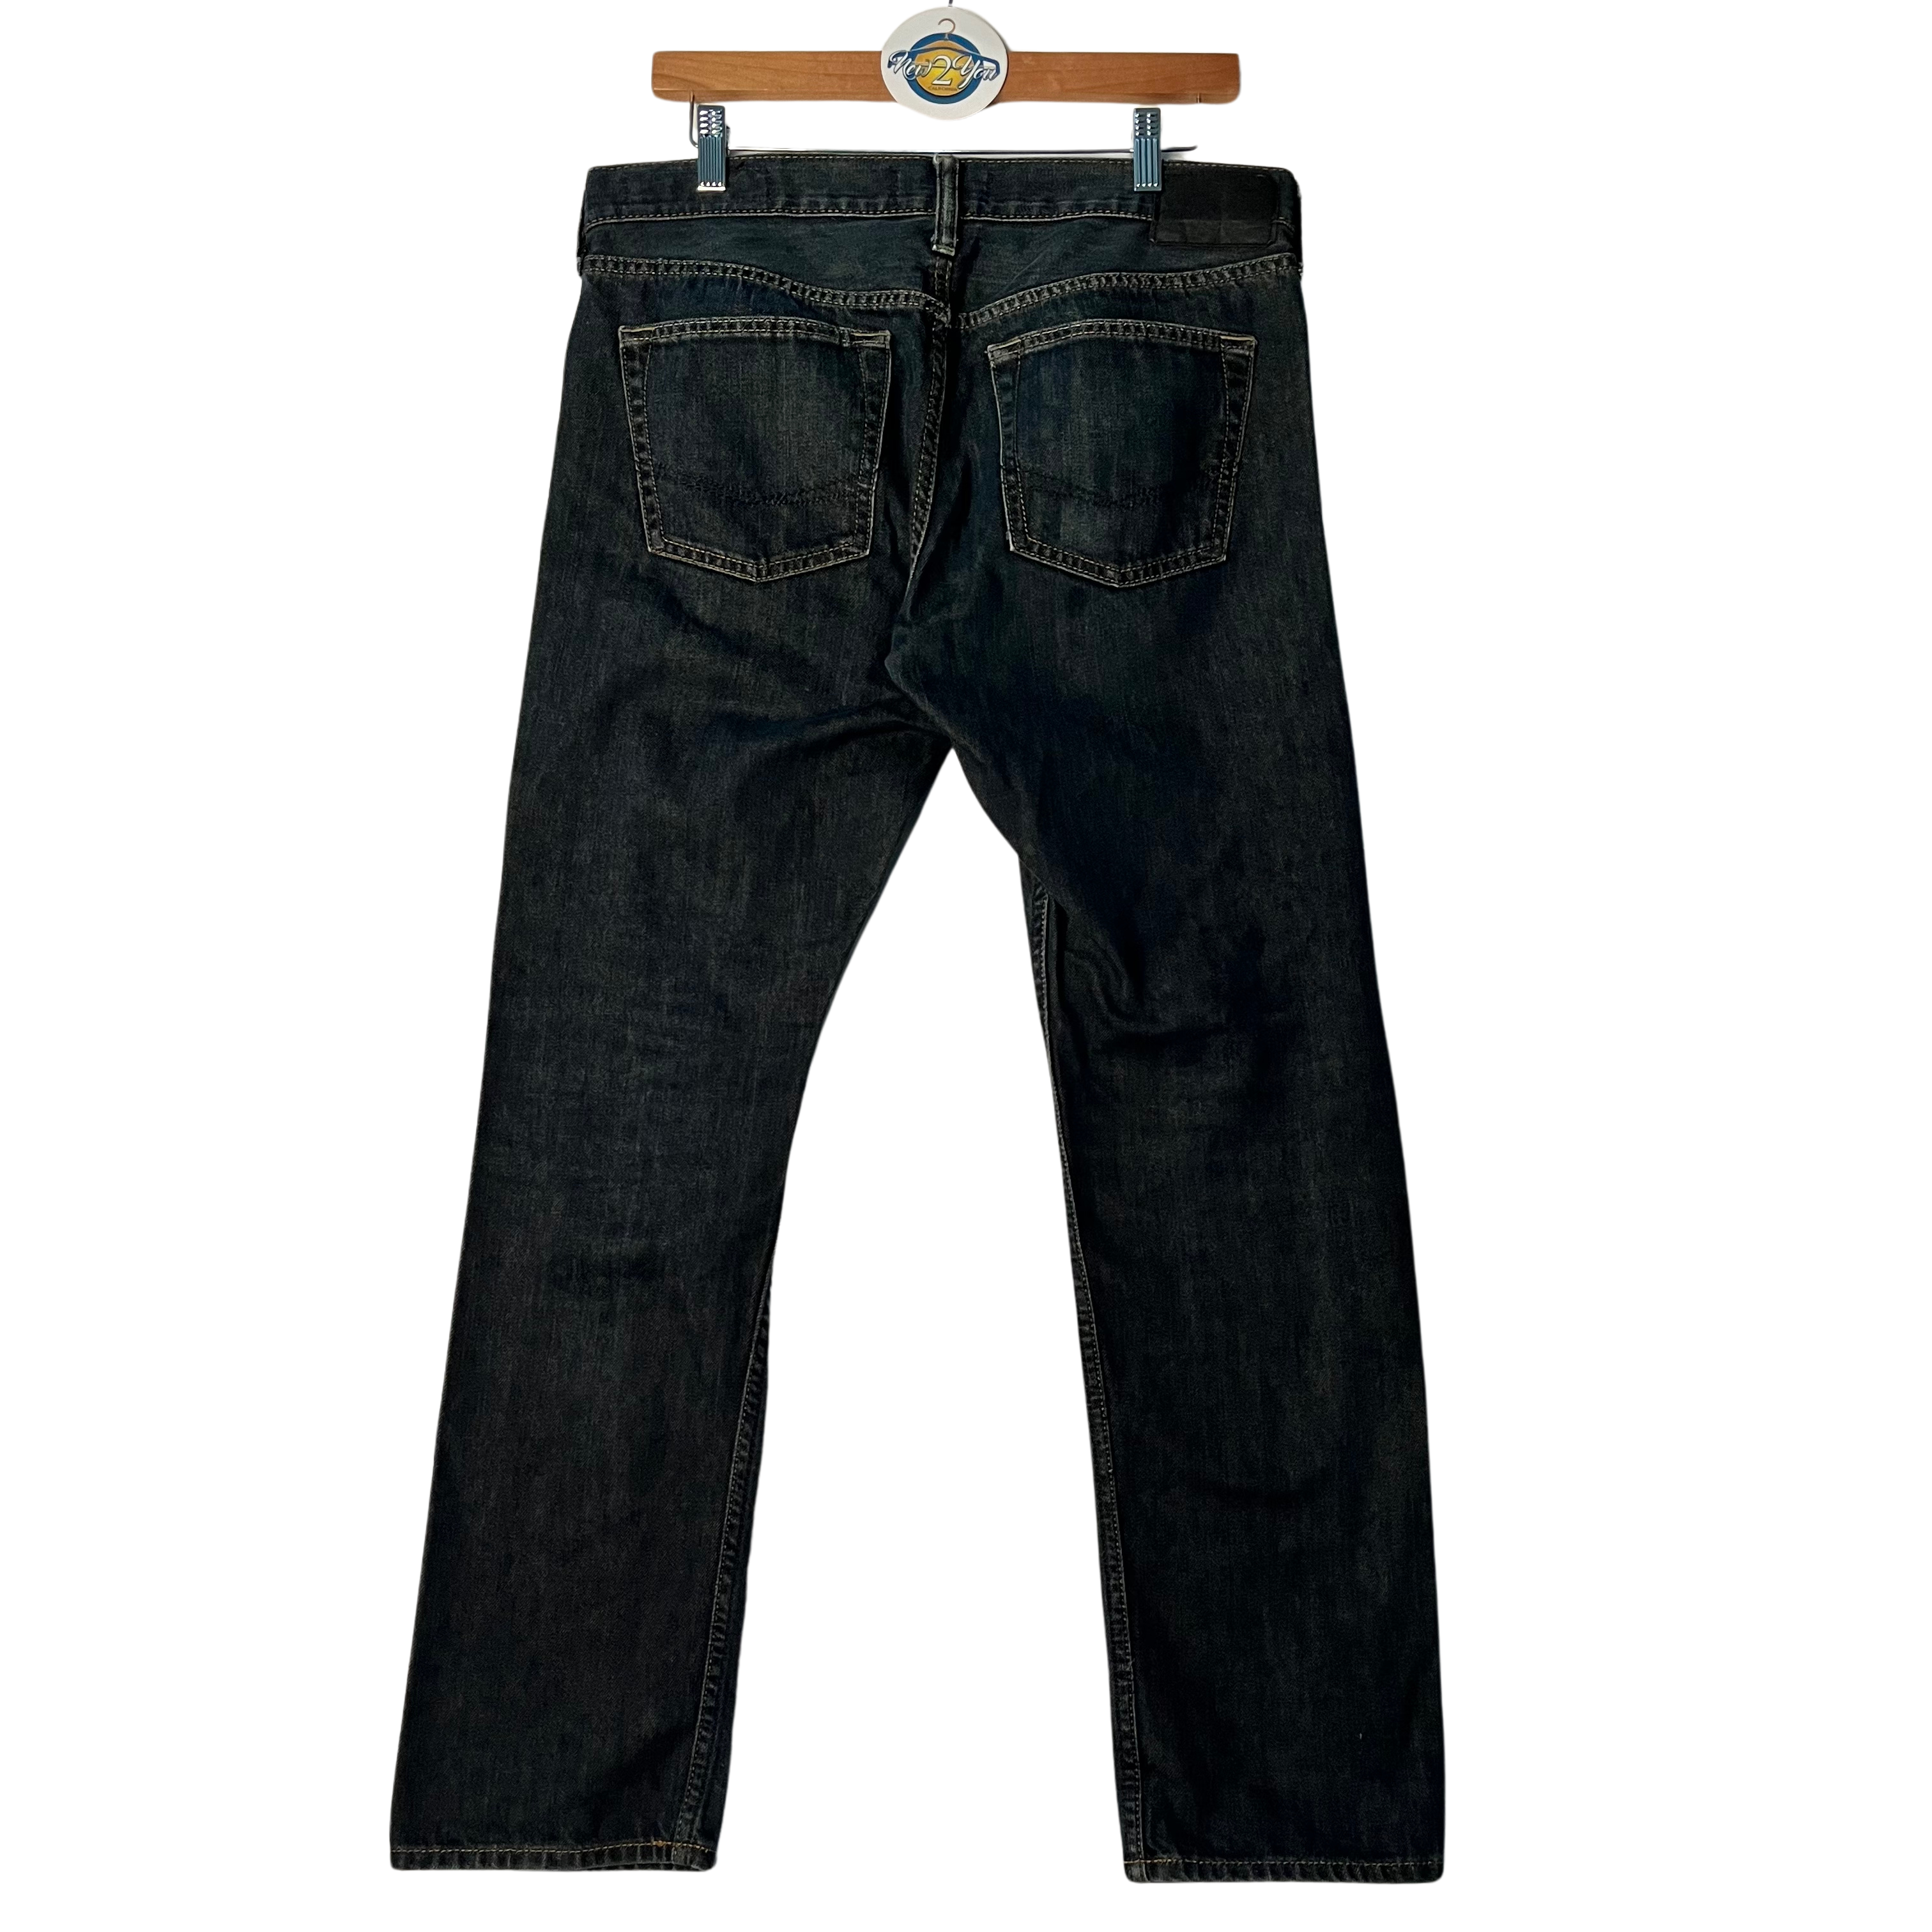 Dark Wash Denim Jeans (Bullhead Denim Co.)